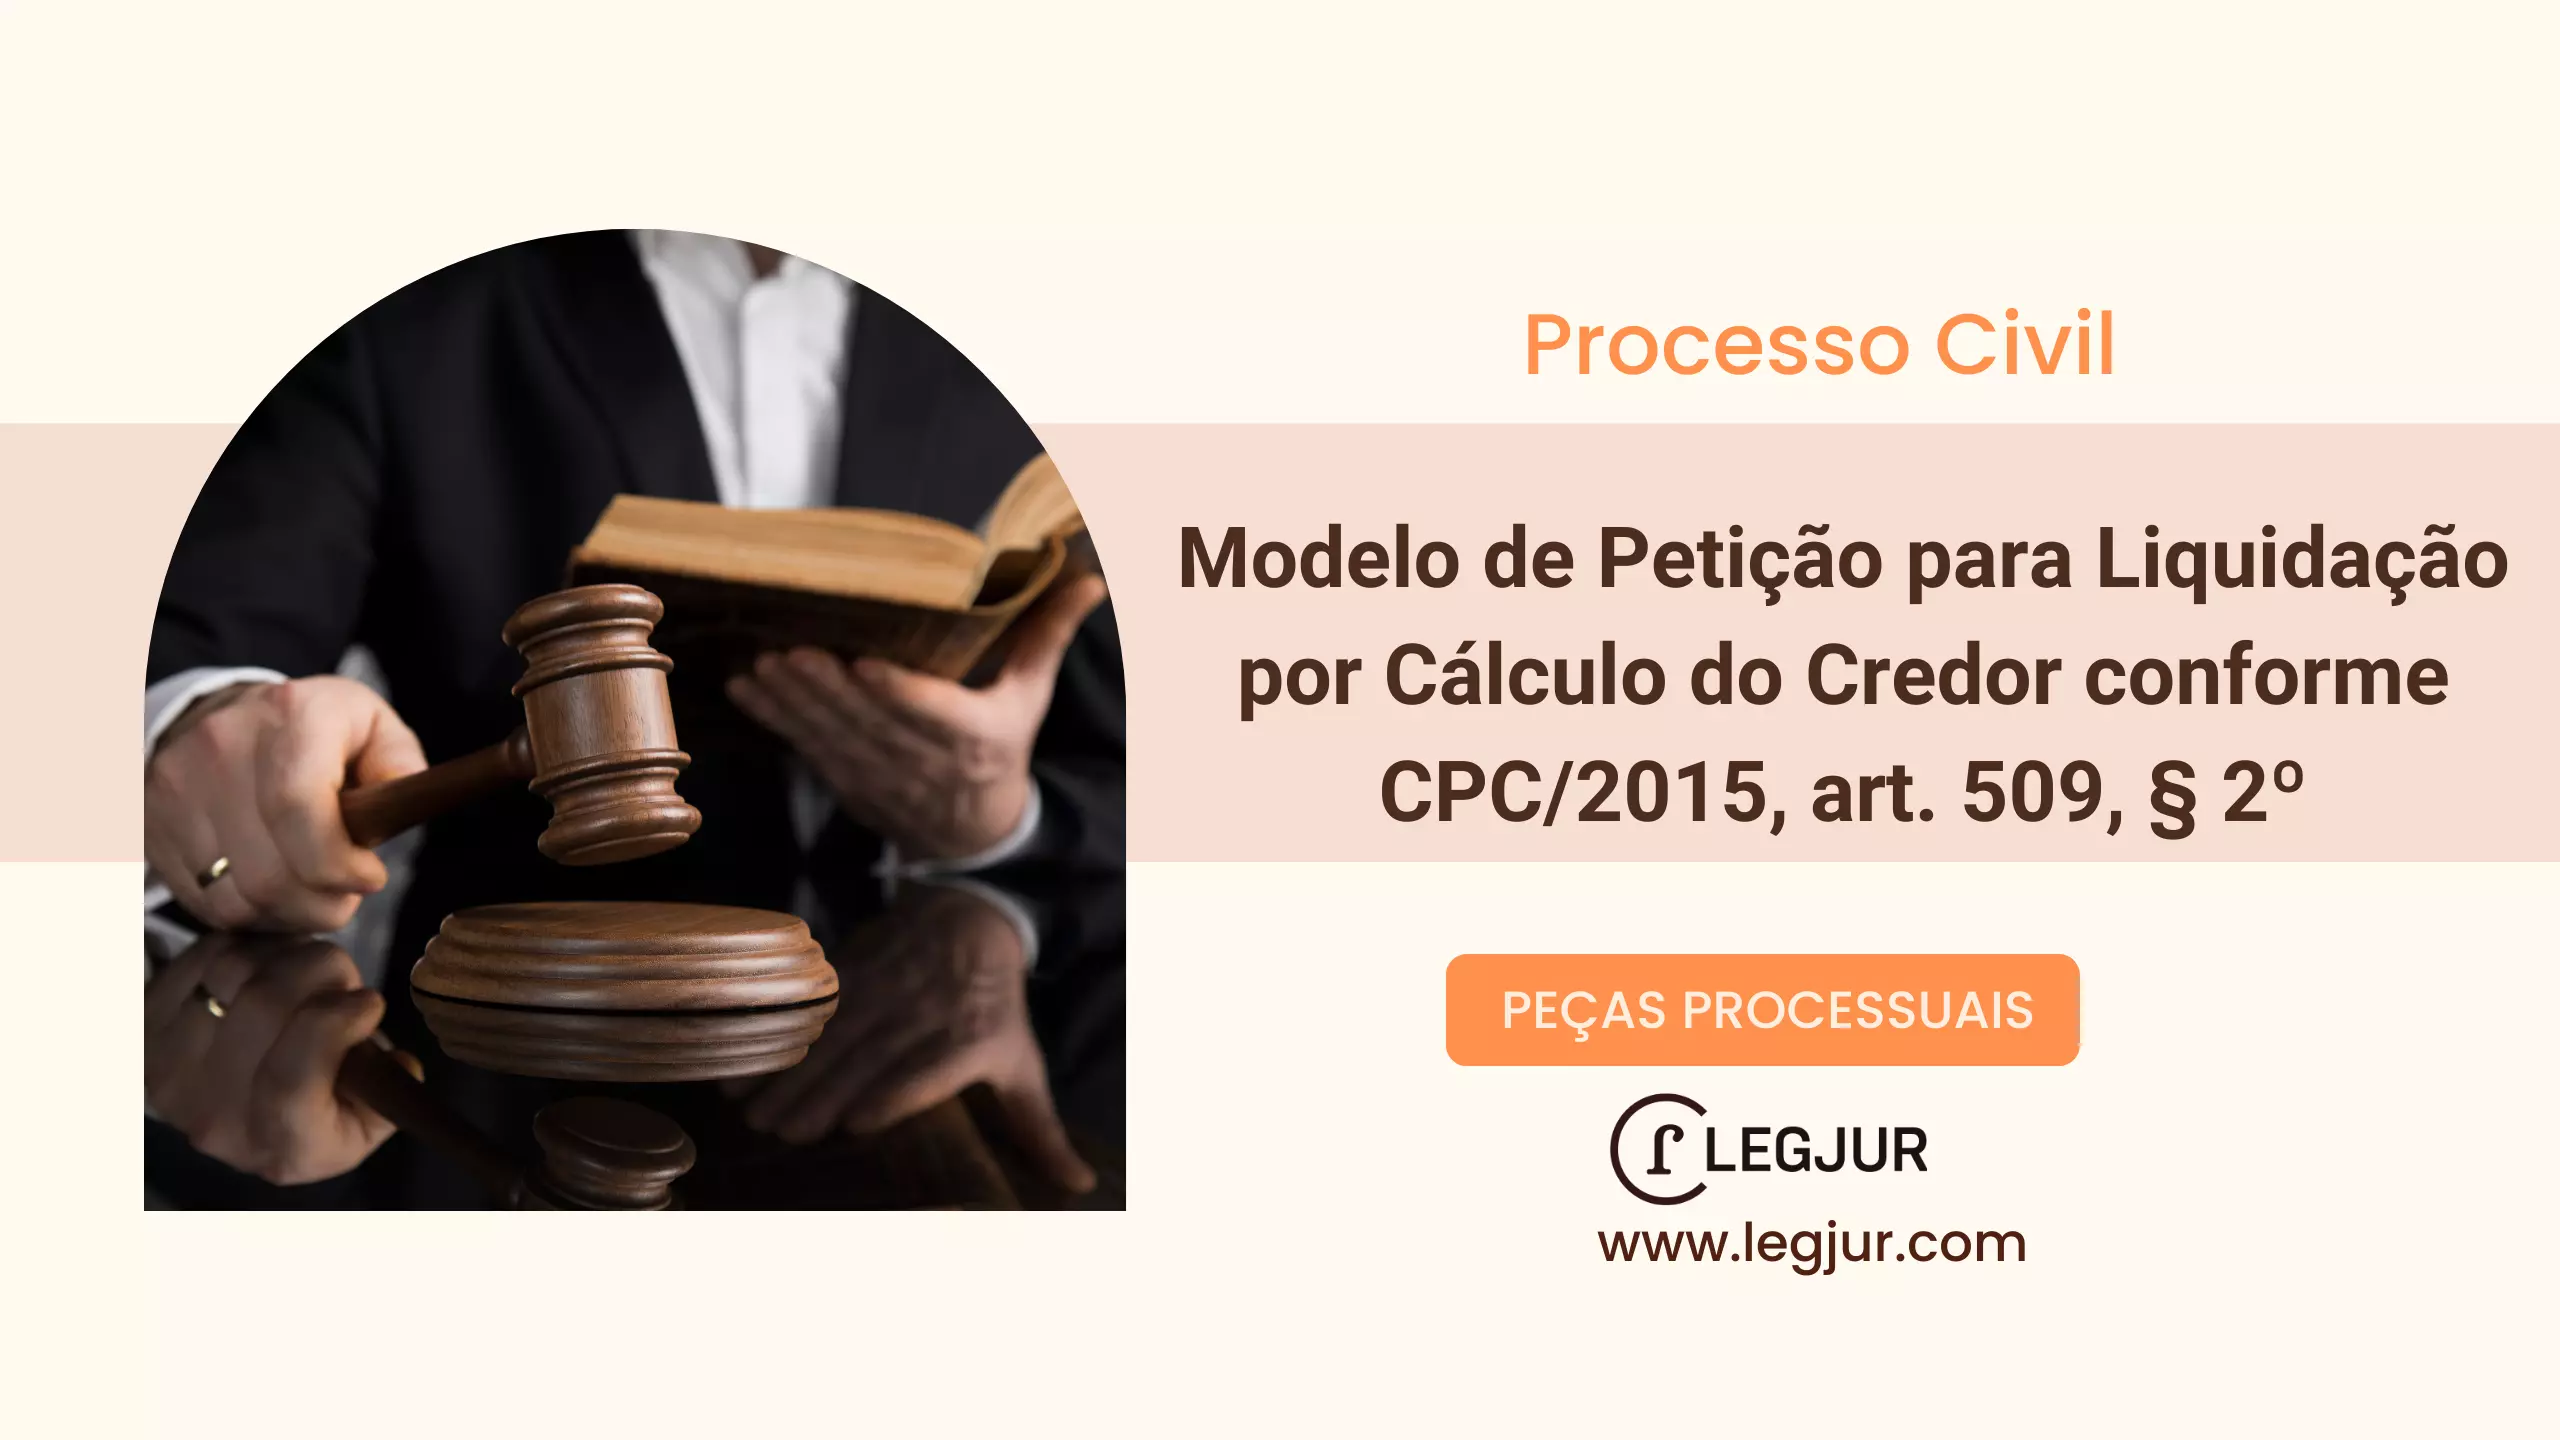 Modelo de Petição para Liquidação por Cálculo do Credor conforme CPC/2015, art. 509, § 2º